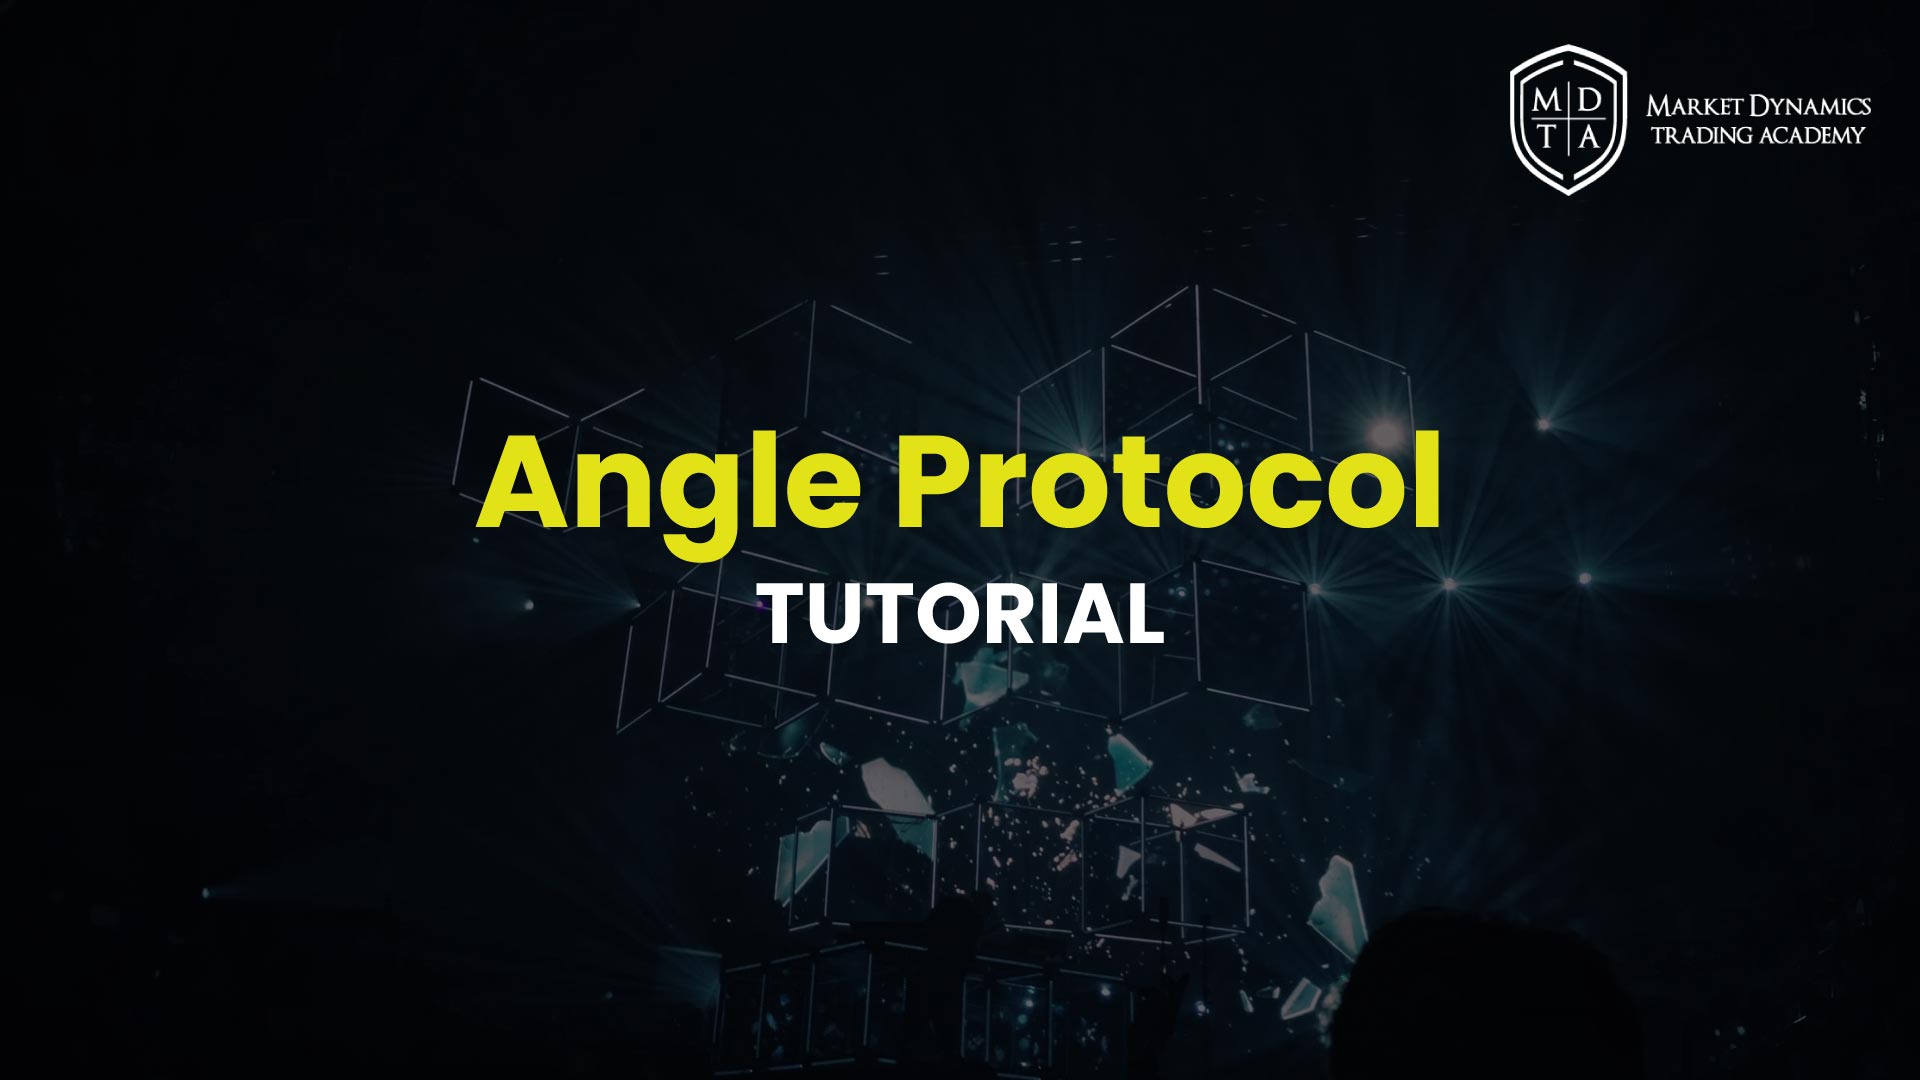 Qué es Angle Protocol Tutorial en Español